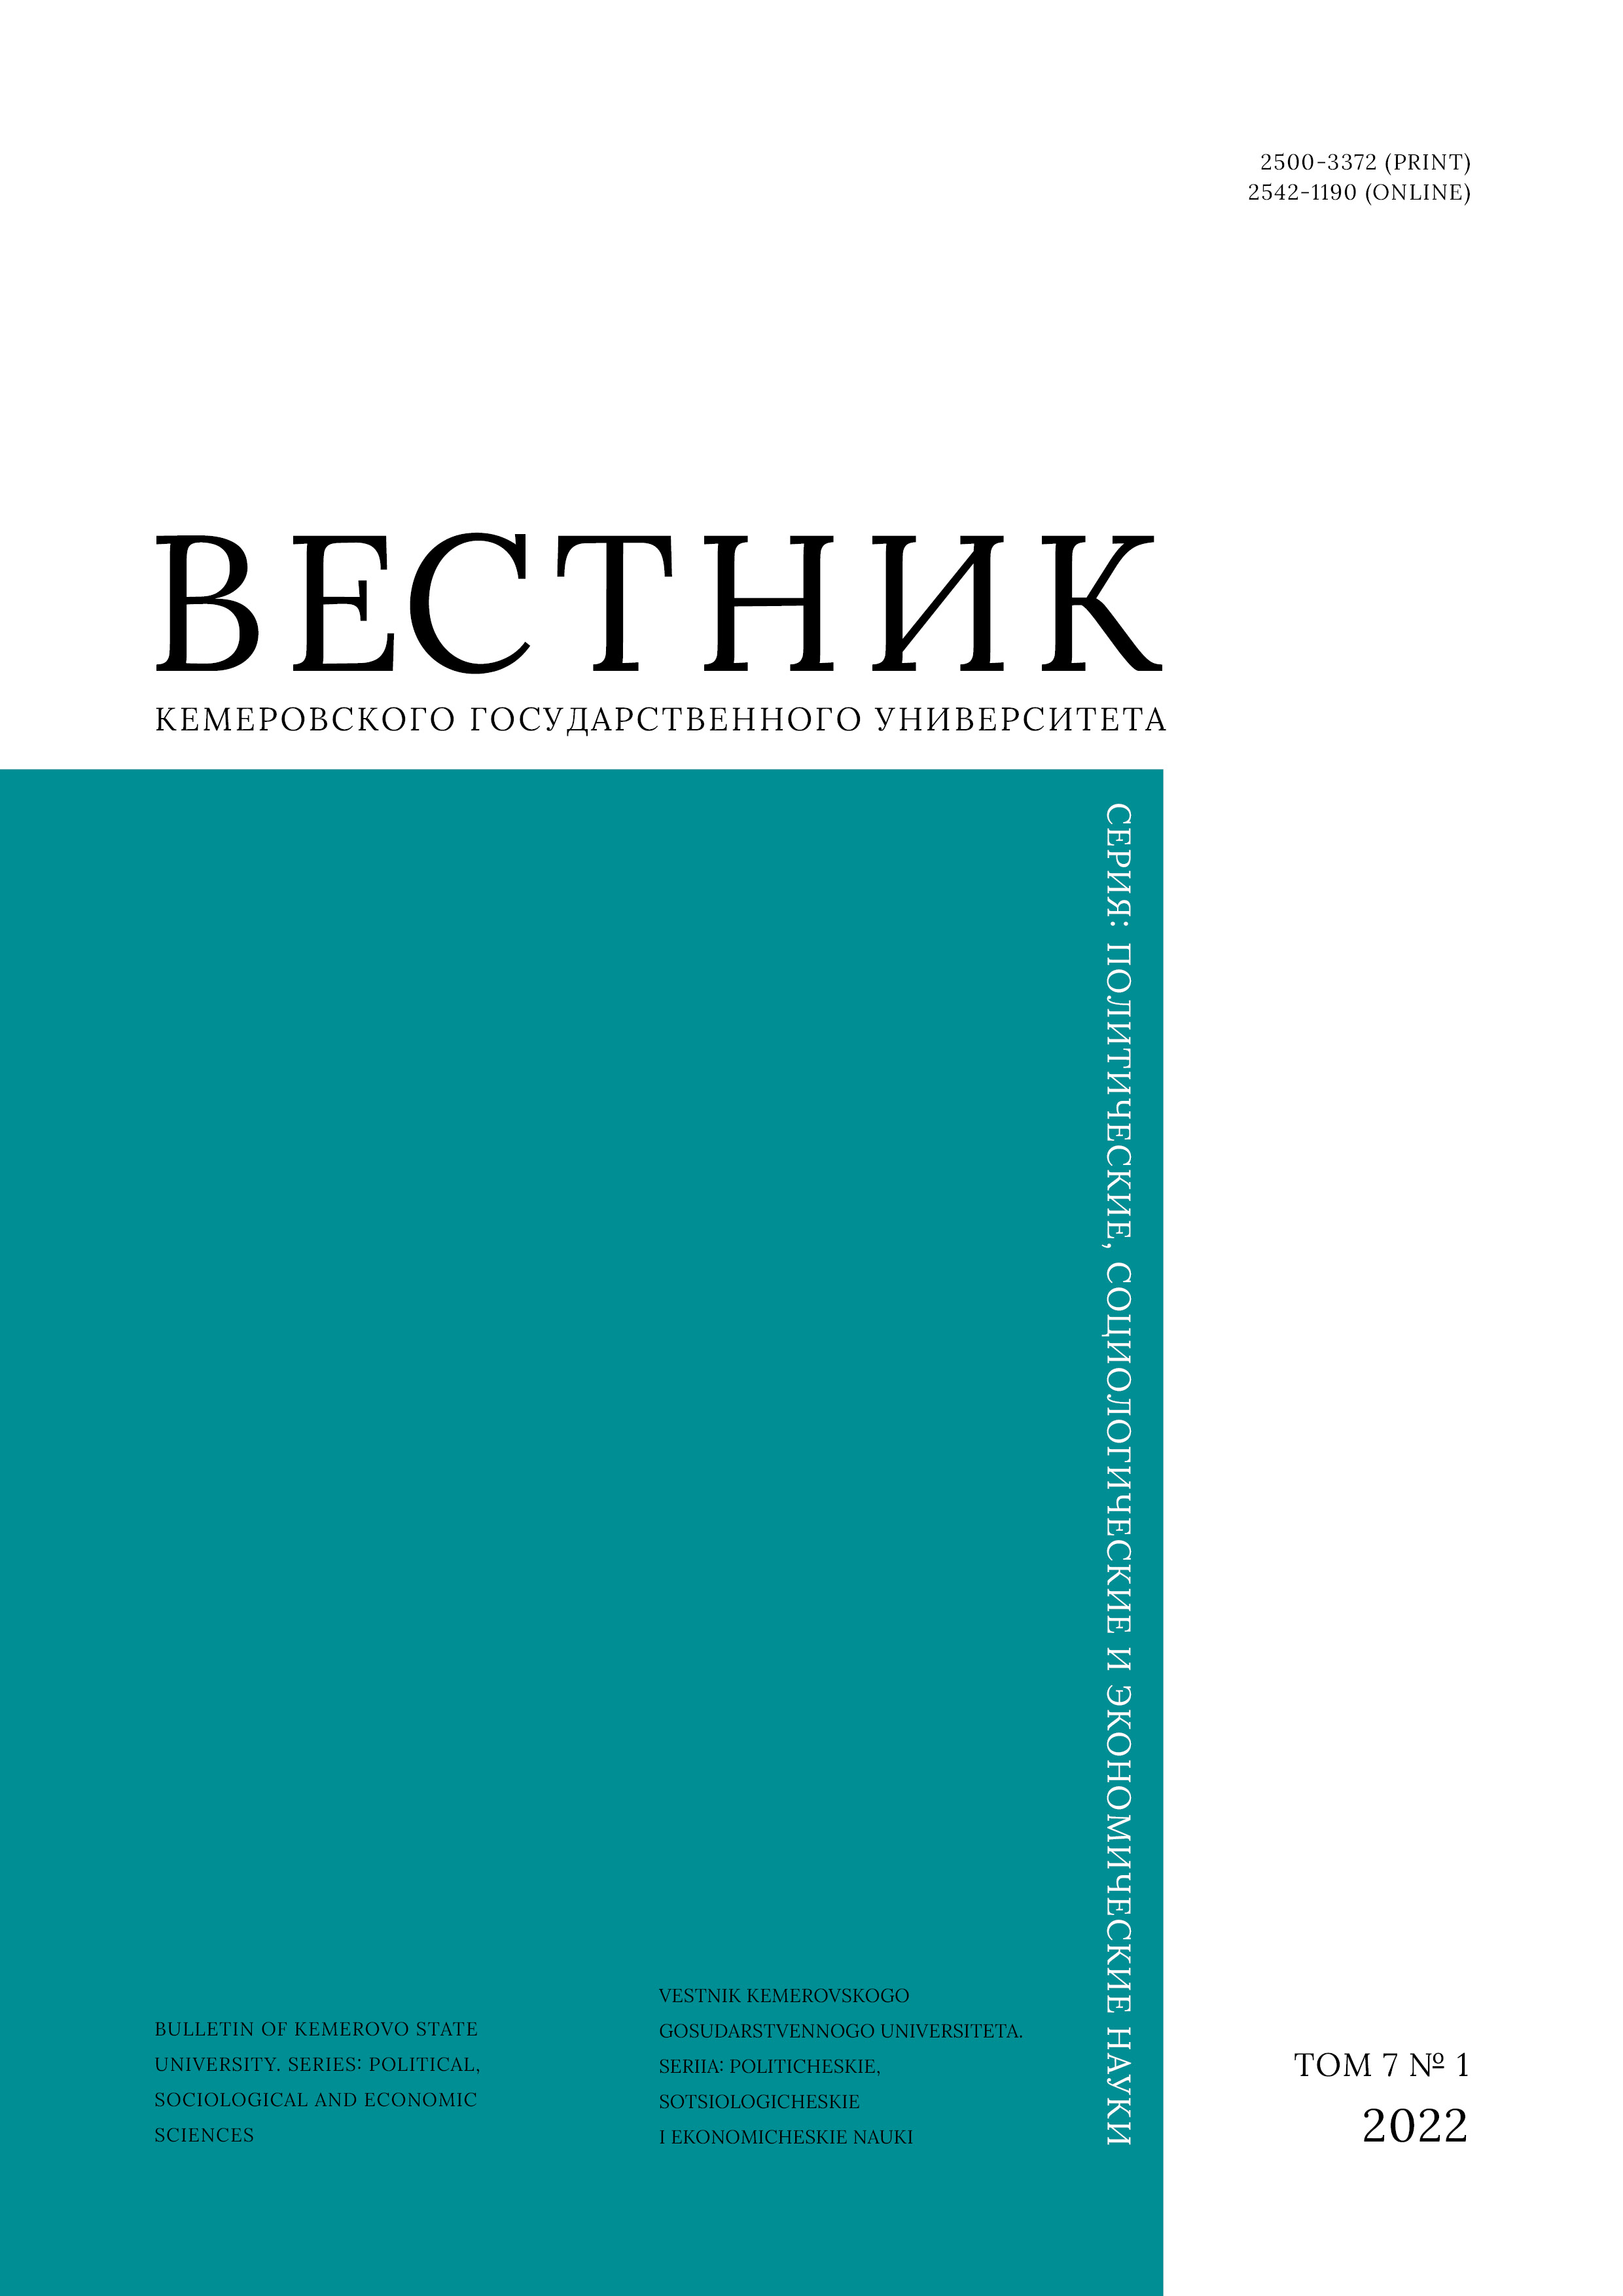             Факторный анализ инвестиционного развития на примере Витебской области Республики Беларусь
    